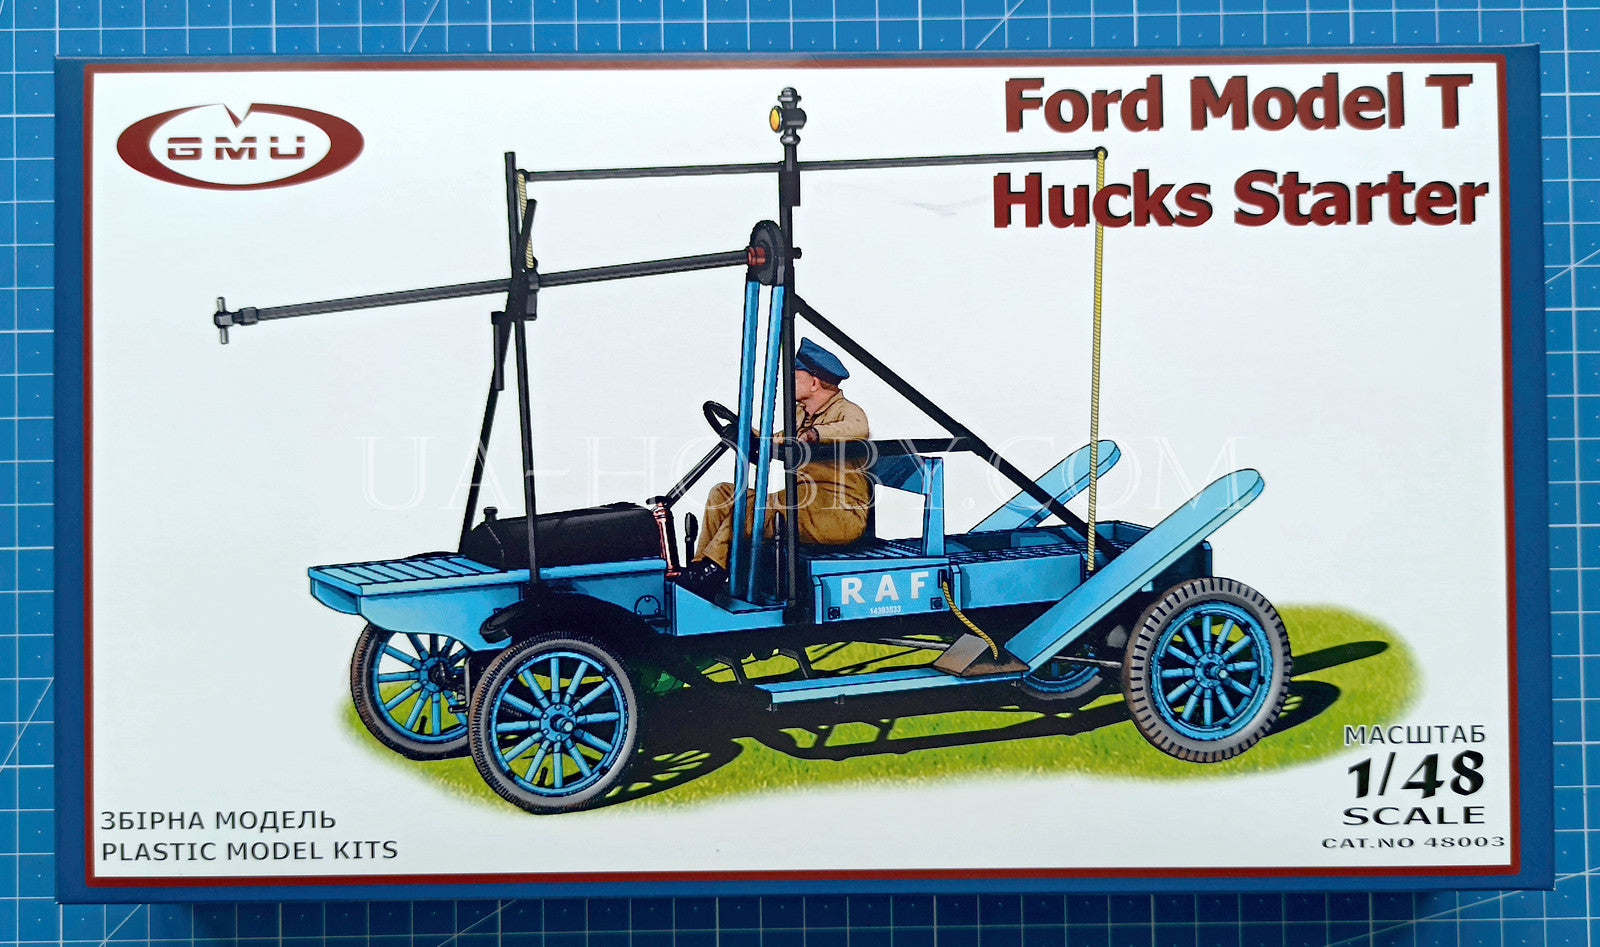 1/48 Ford Model T Hucks Starter. GMU 48003